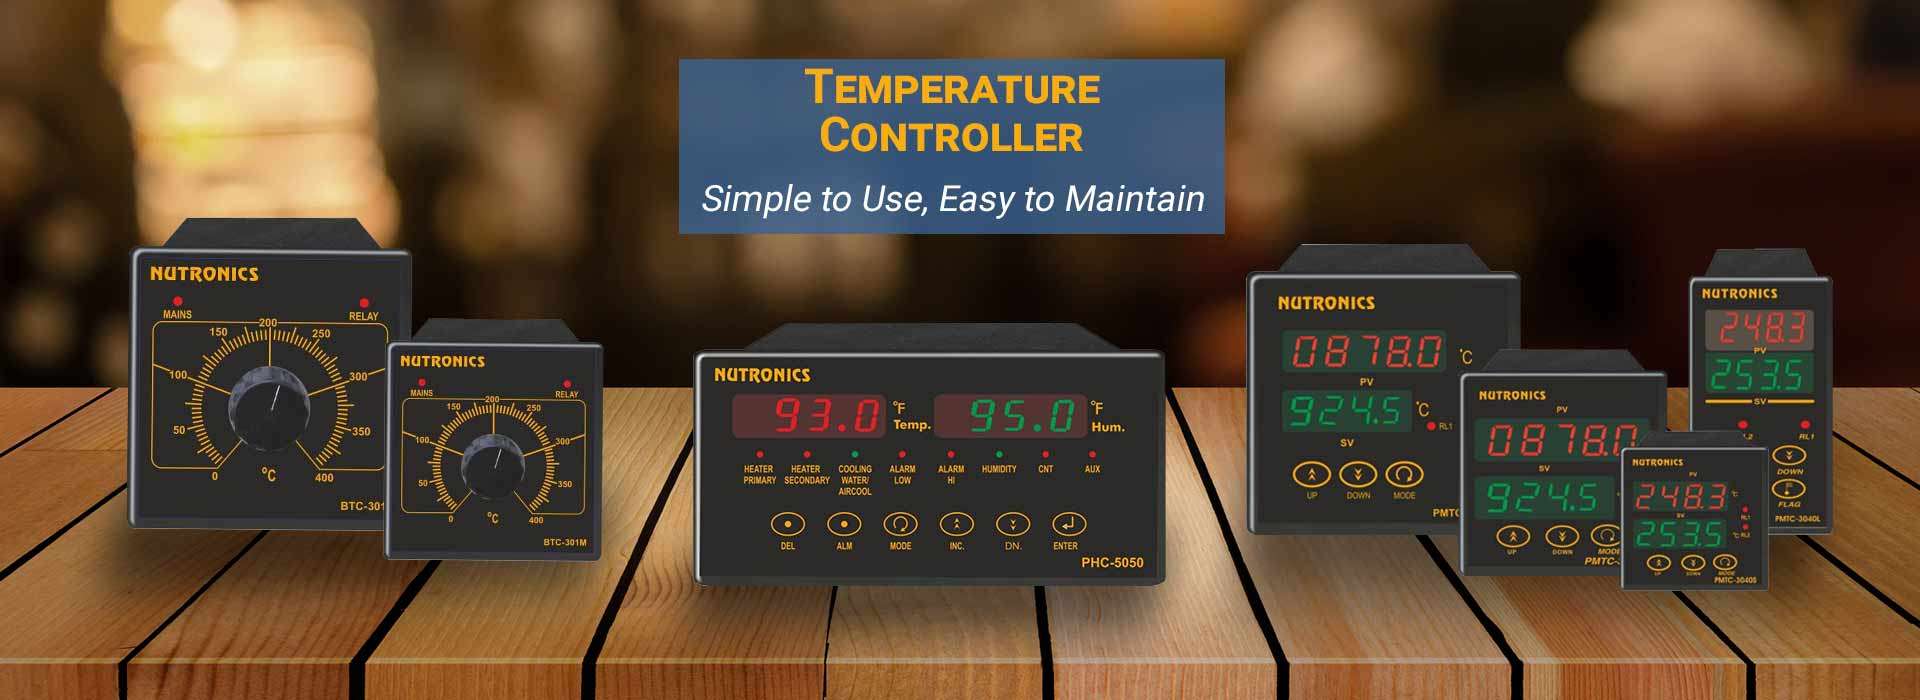  Temperature controller Manufacturers in India